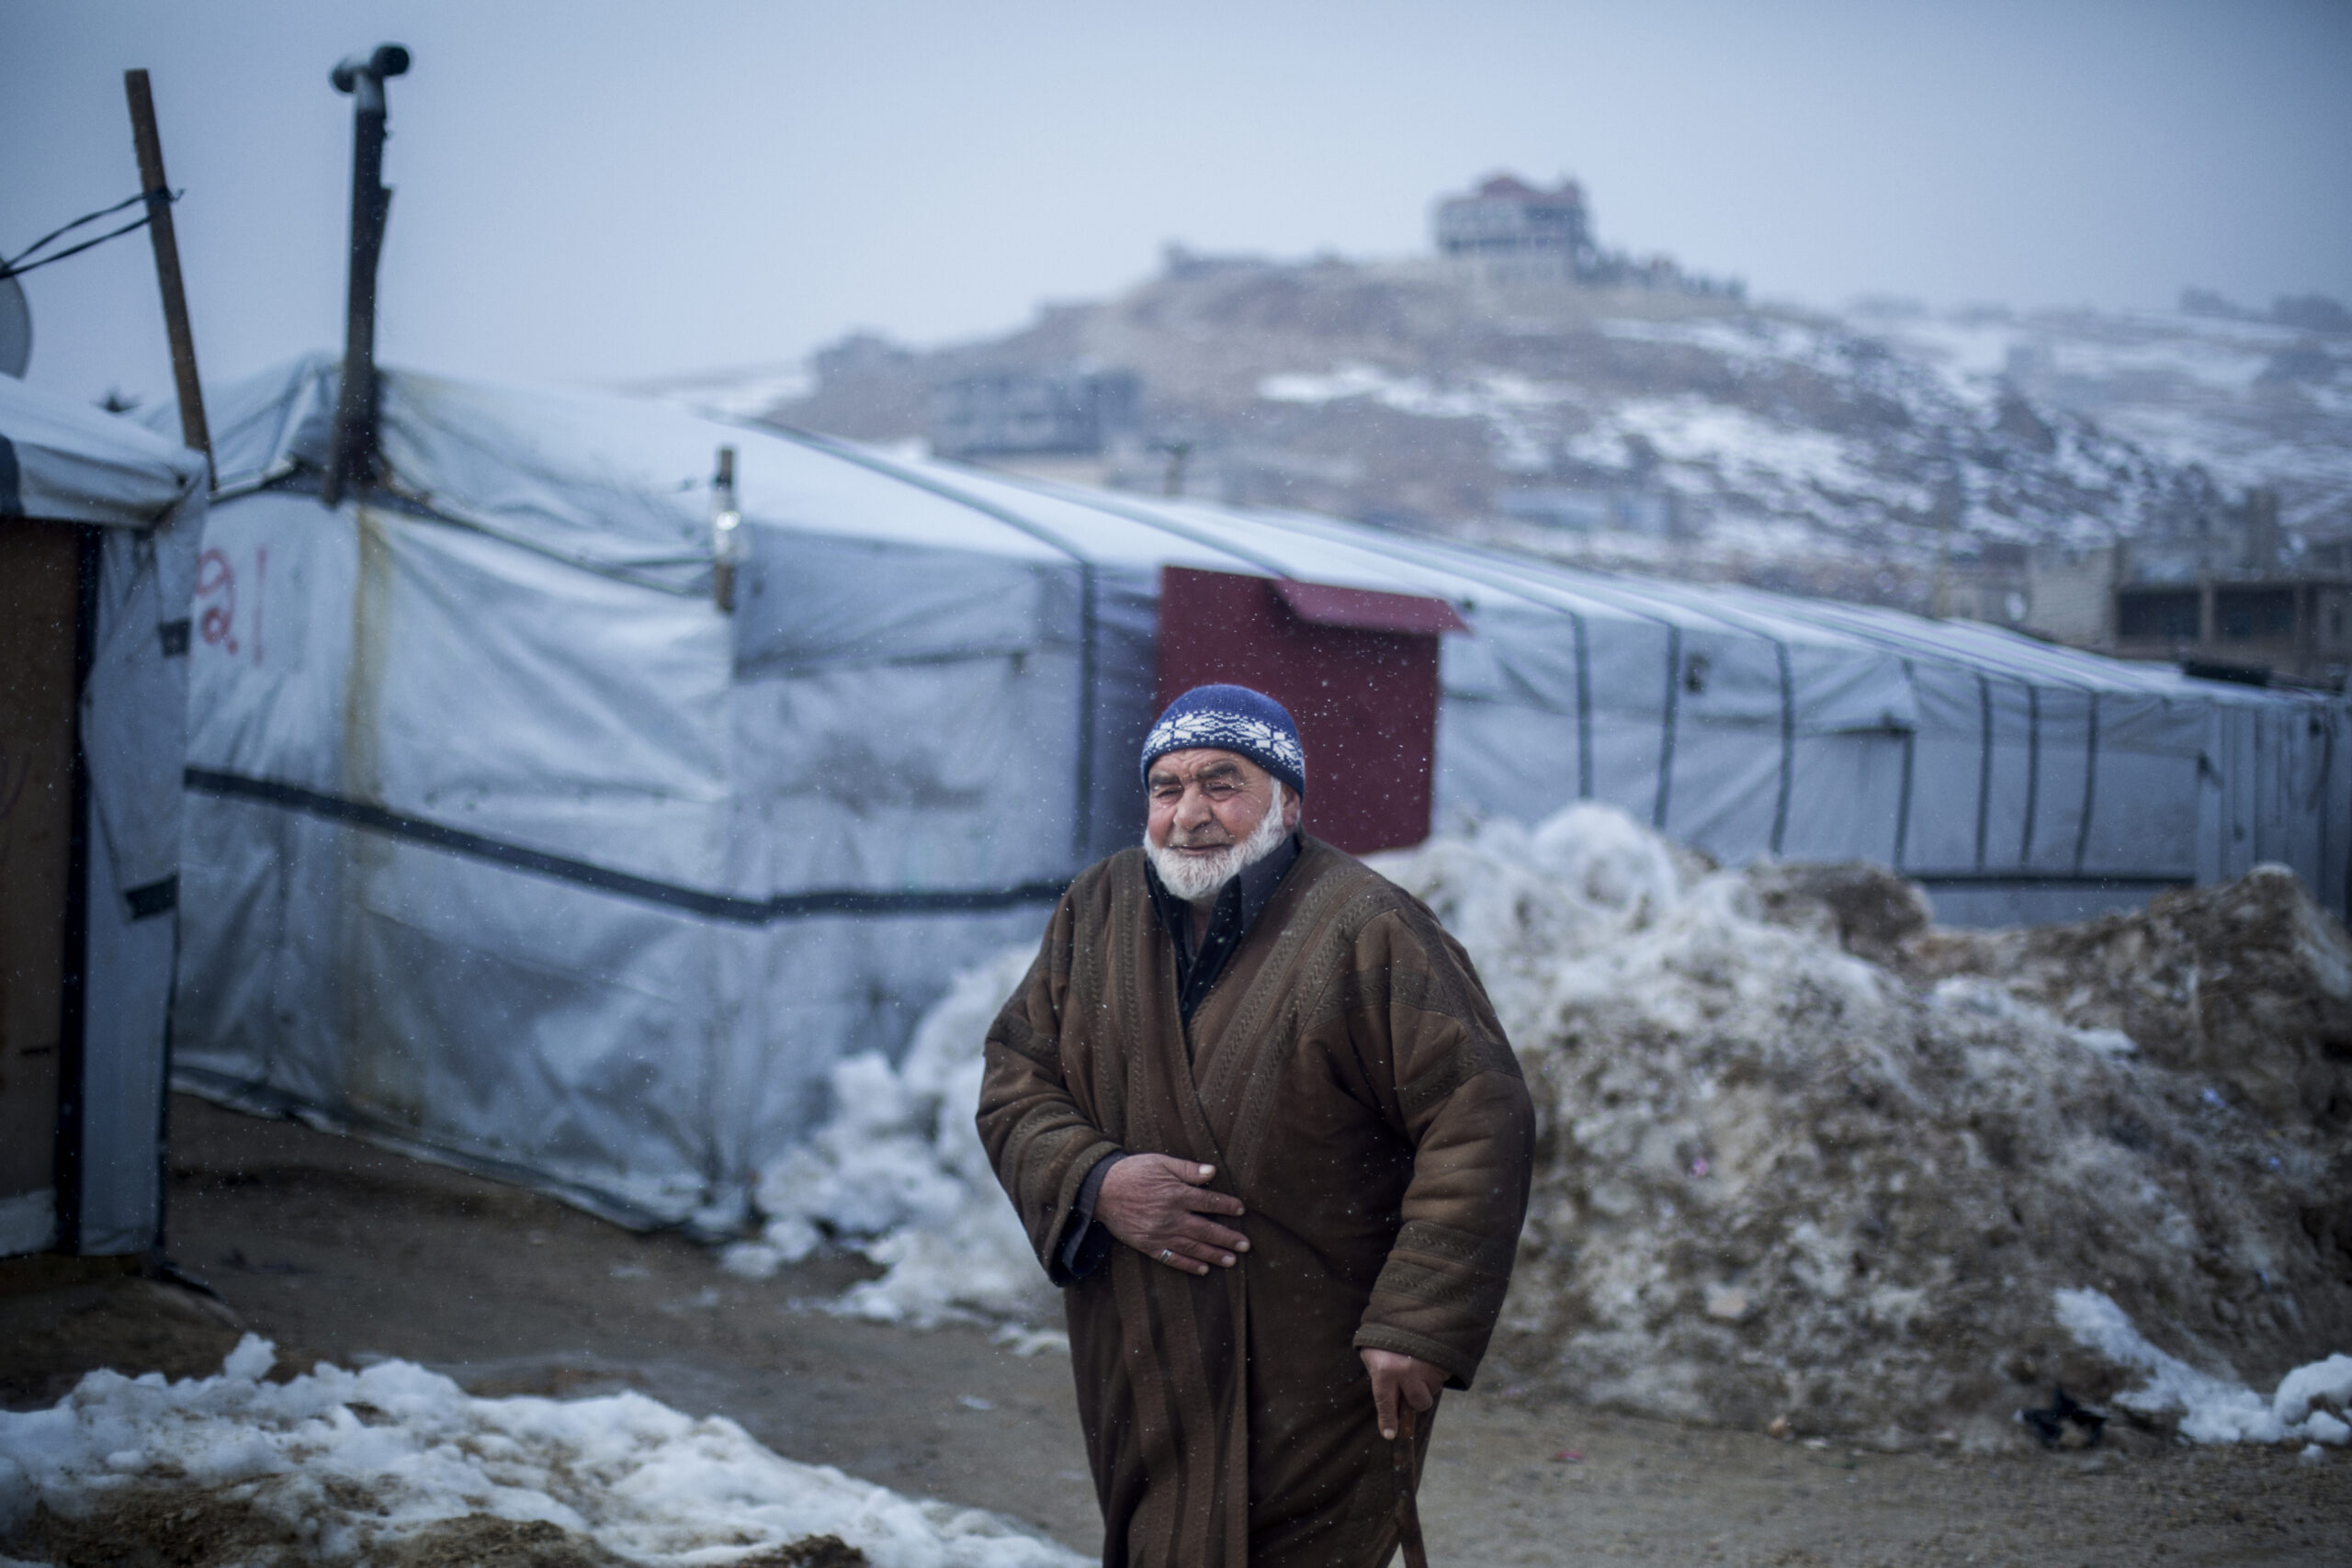 De jaren van vluchten tekenen het gezicht van deze oudere man. Alsook de ijzige kou tijdens de winter. Hij vluchtte uit Syrië en verblijft nu in Arsal, Libanon. Om zijn conditie op peil te houden, loopt hij regelmatig een rondje door het opvangkamp. ©UNHCR/ Diego Ibarra Sánchez